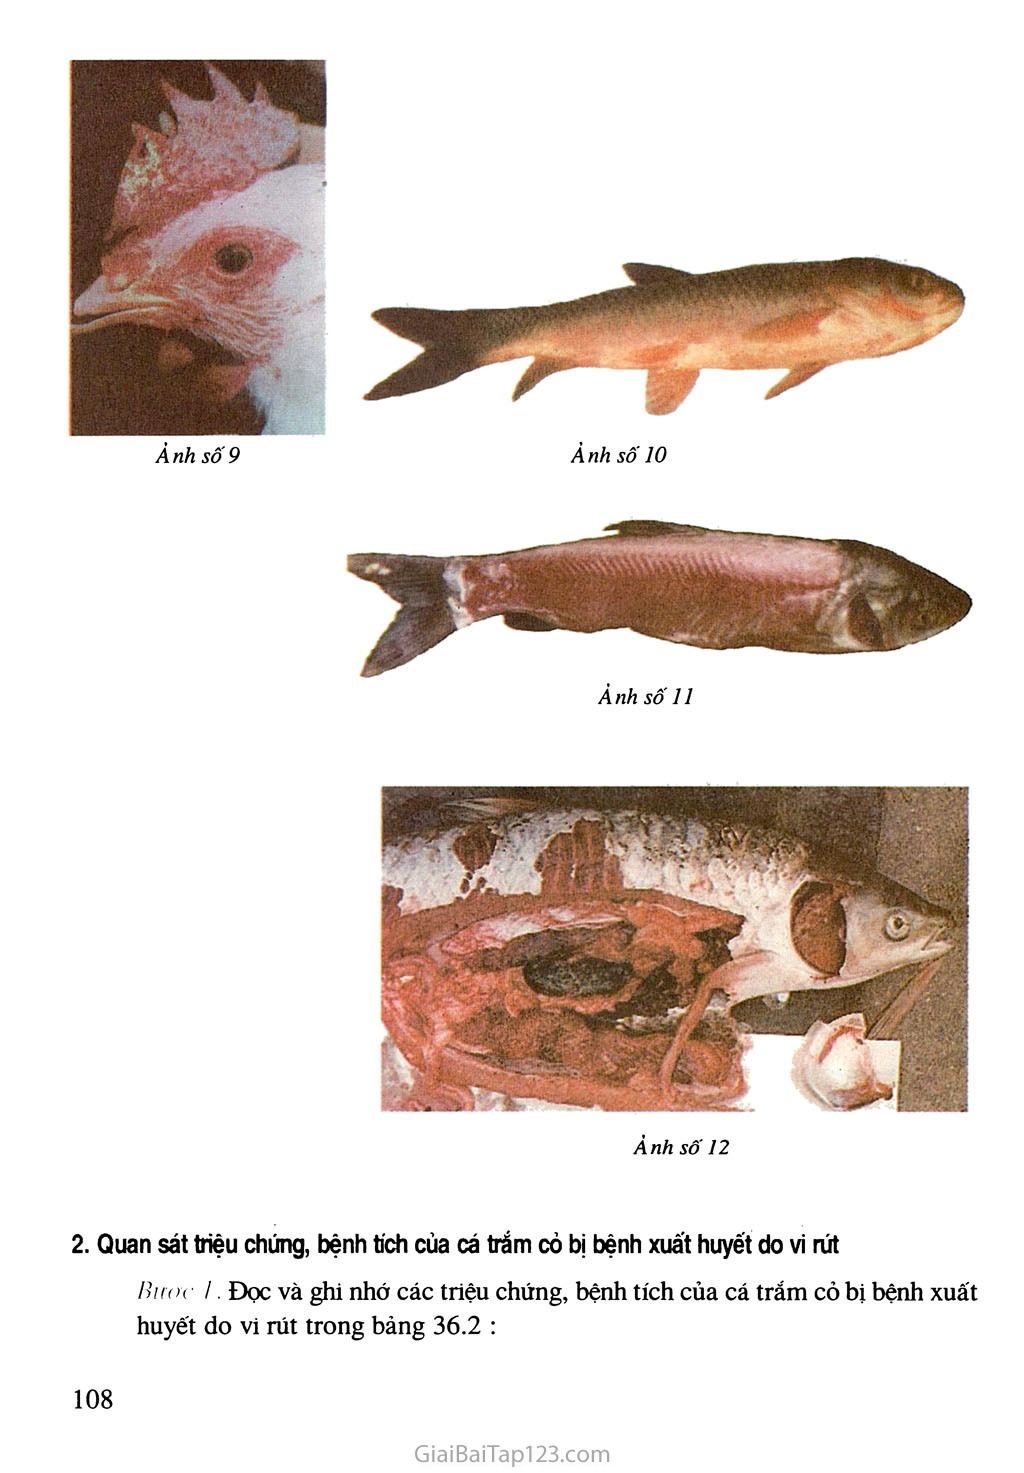 Bài 36. Thực hành: Quan sát triệu chứng, bệnh tích của gà bị mắc bệnh Niu cát xơn (Newcastle) và cá trắm cỏ bị bệnh xuất huyết do vi rút trang 3